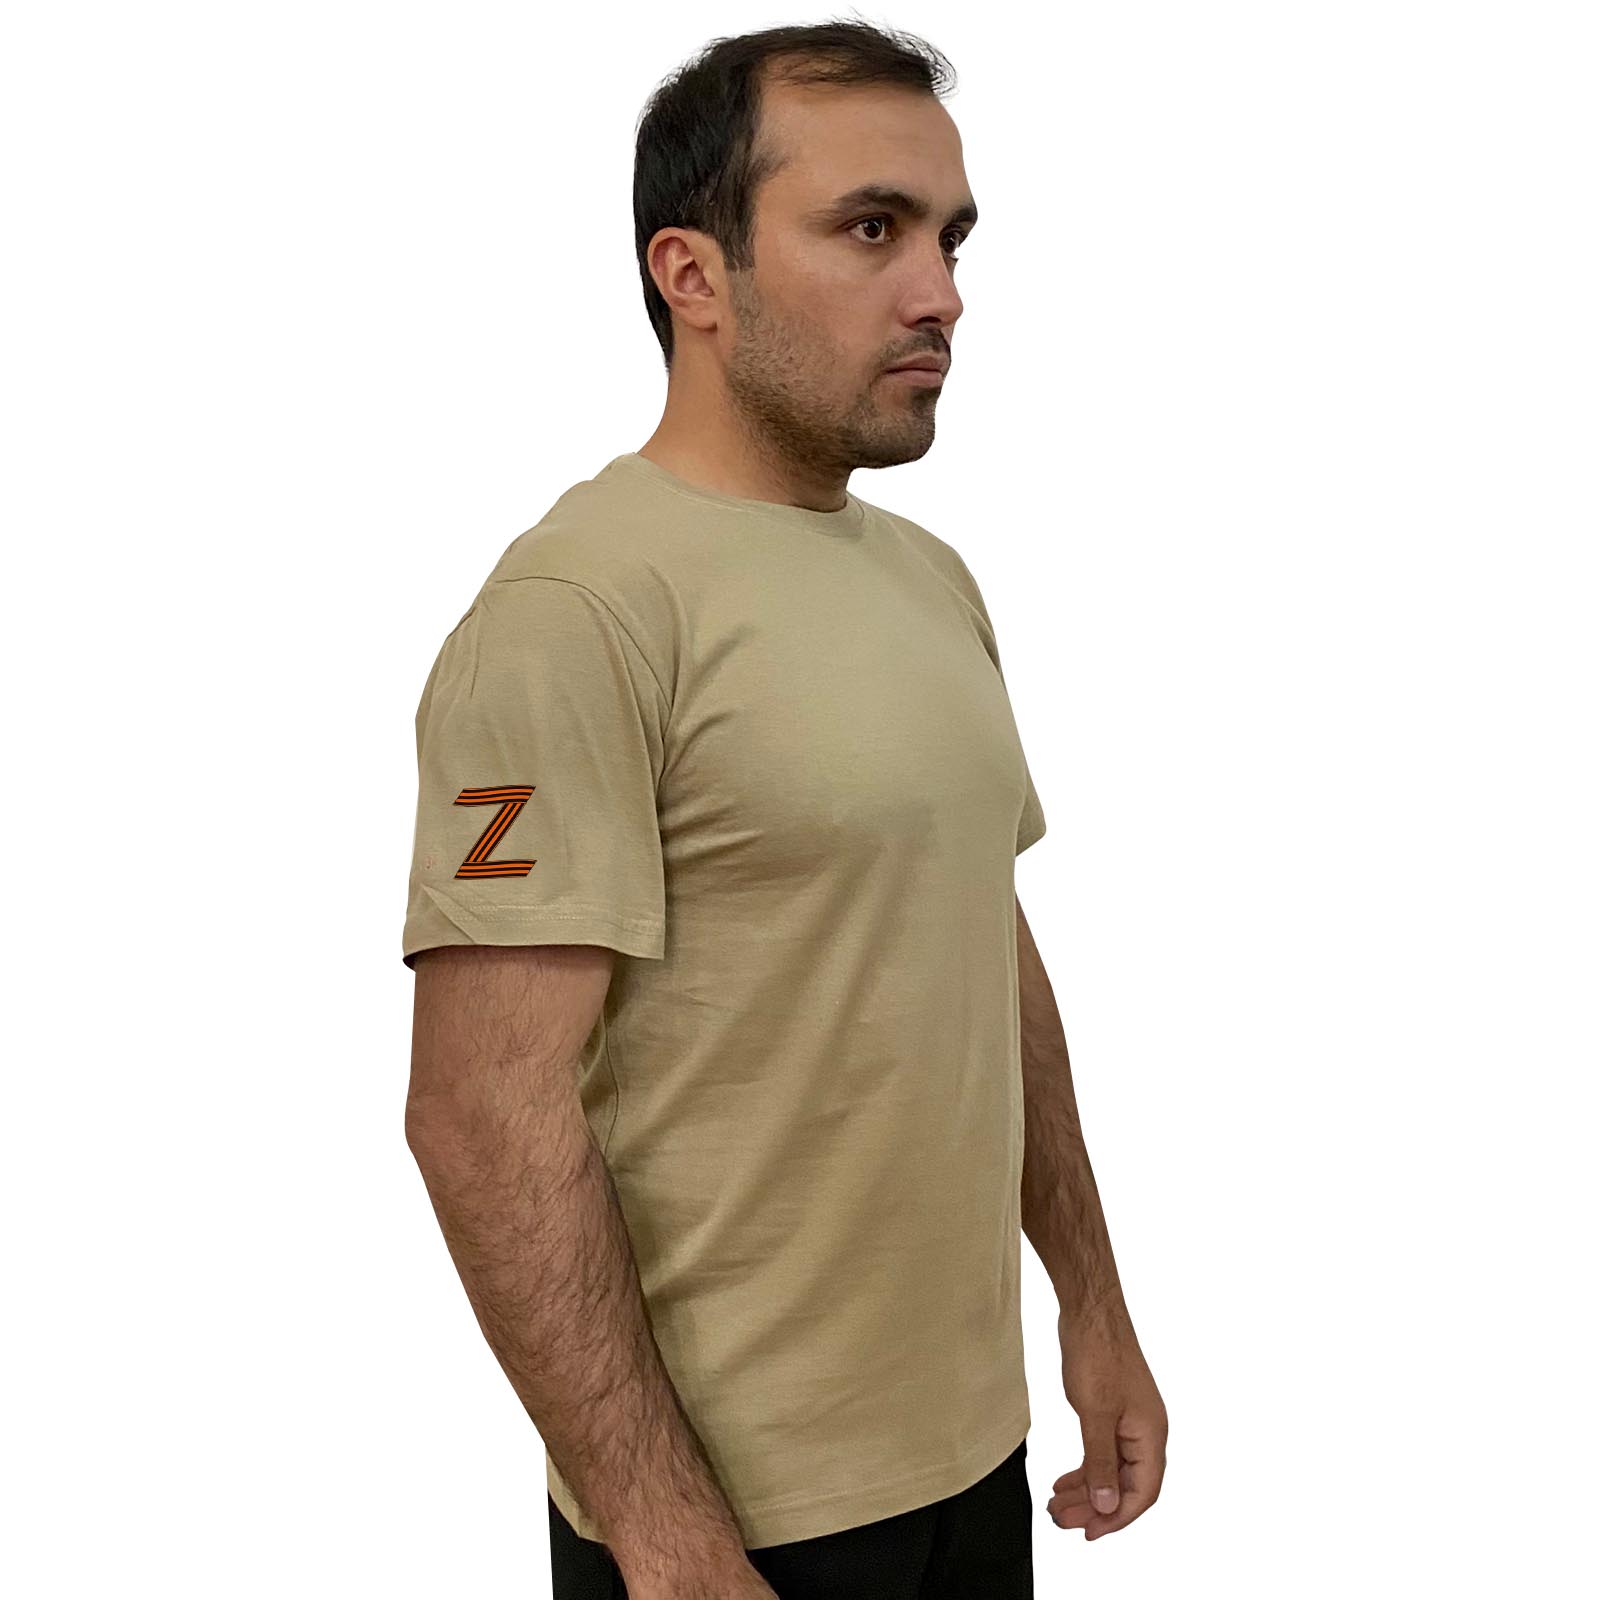 Купить трикотажную мужскую футболку с литерой Z онлайн